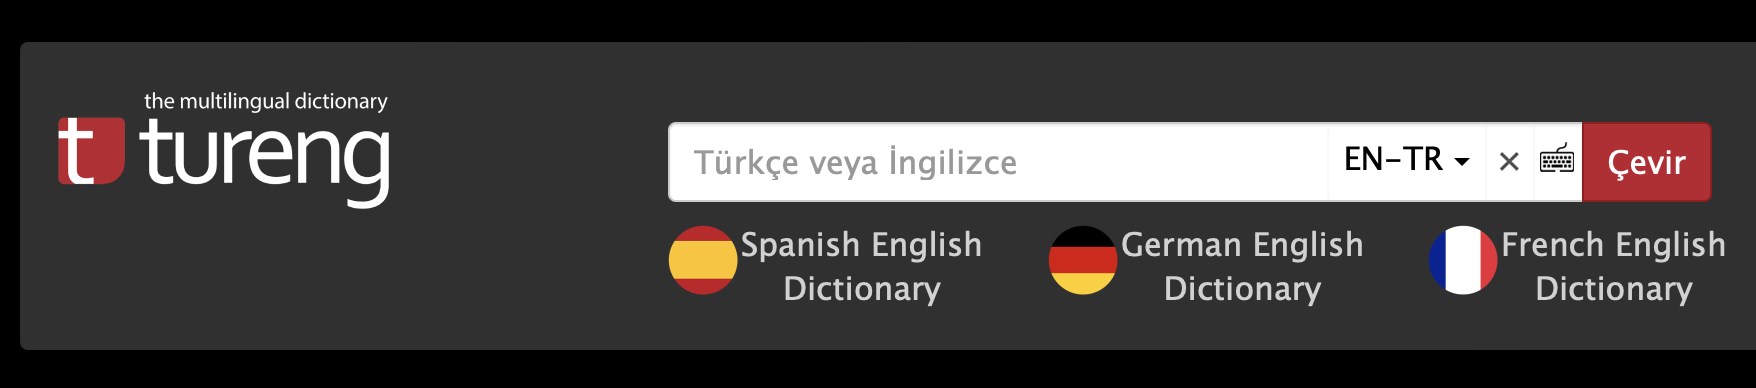 tureng sözlük ingilizce türkçe çeviri